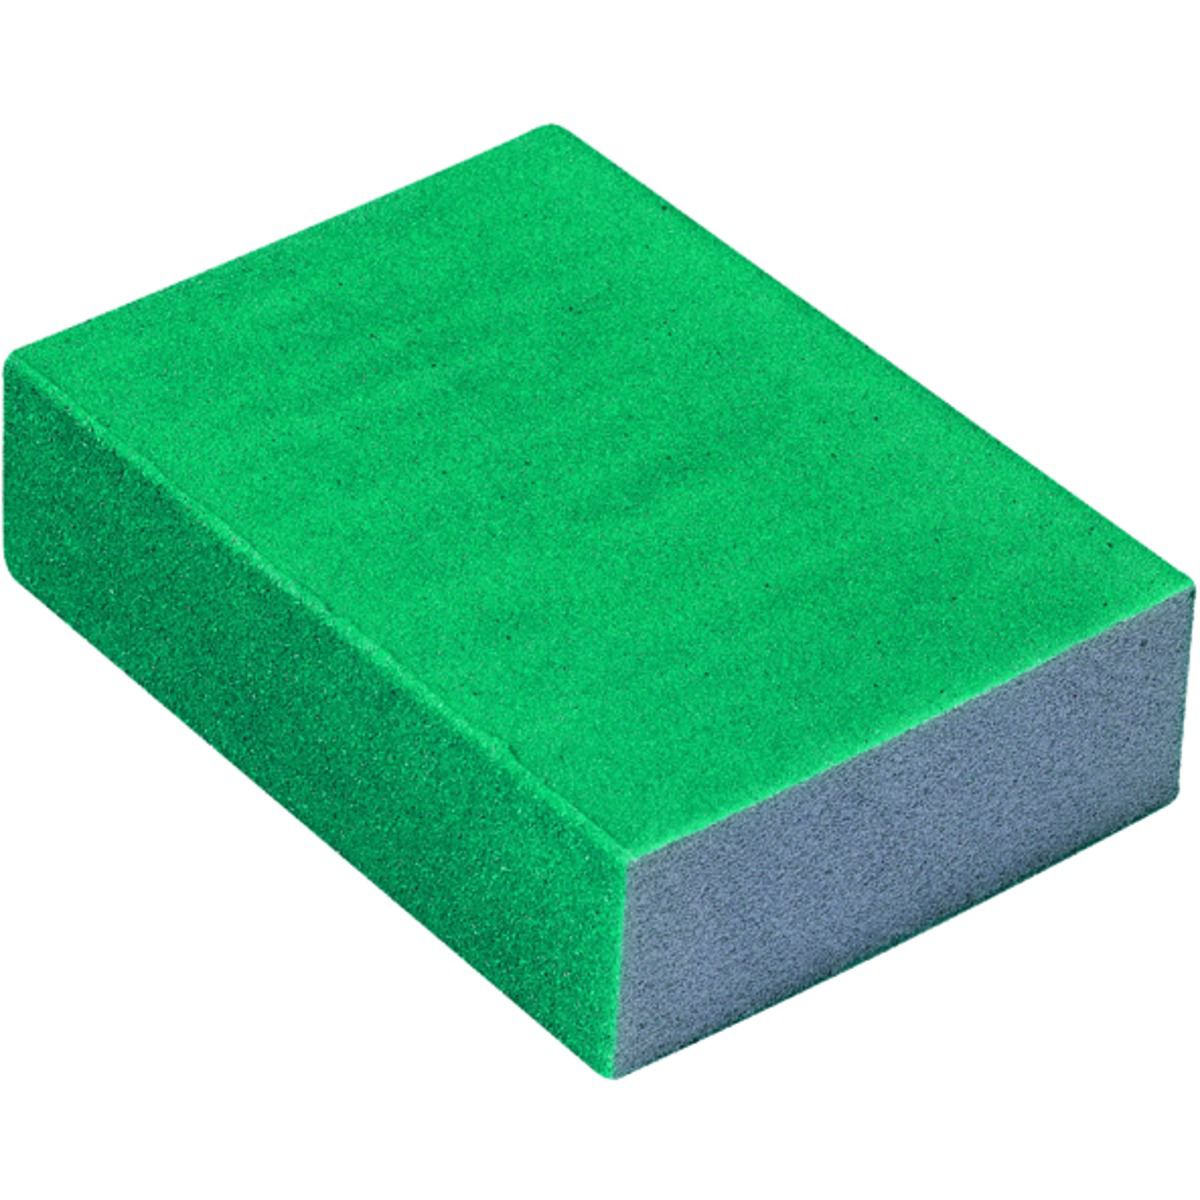 Image of Wickes Flexible Sanding Sponge - Fine/Medium